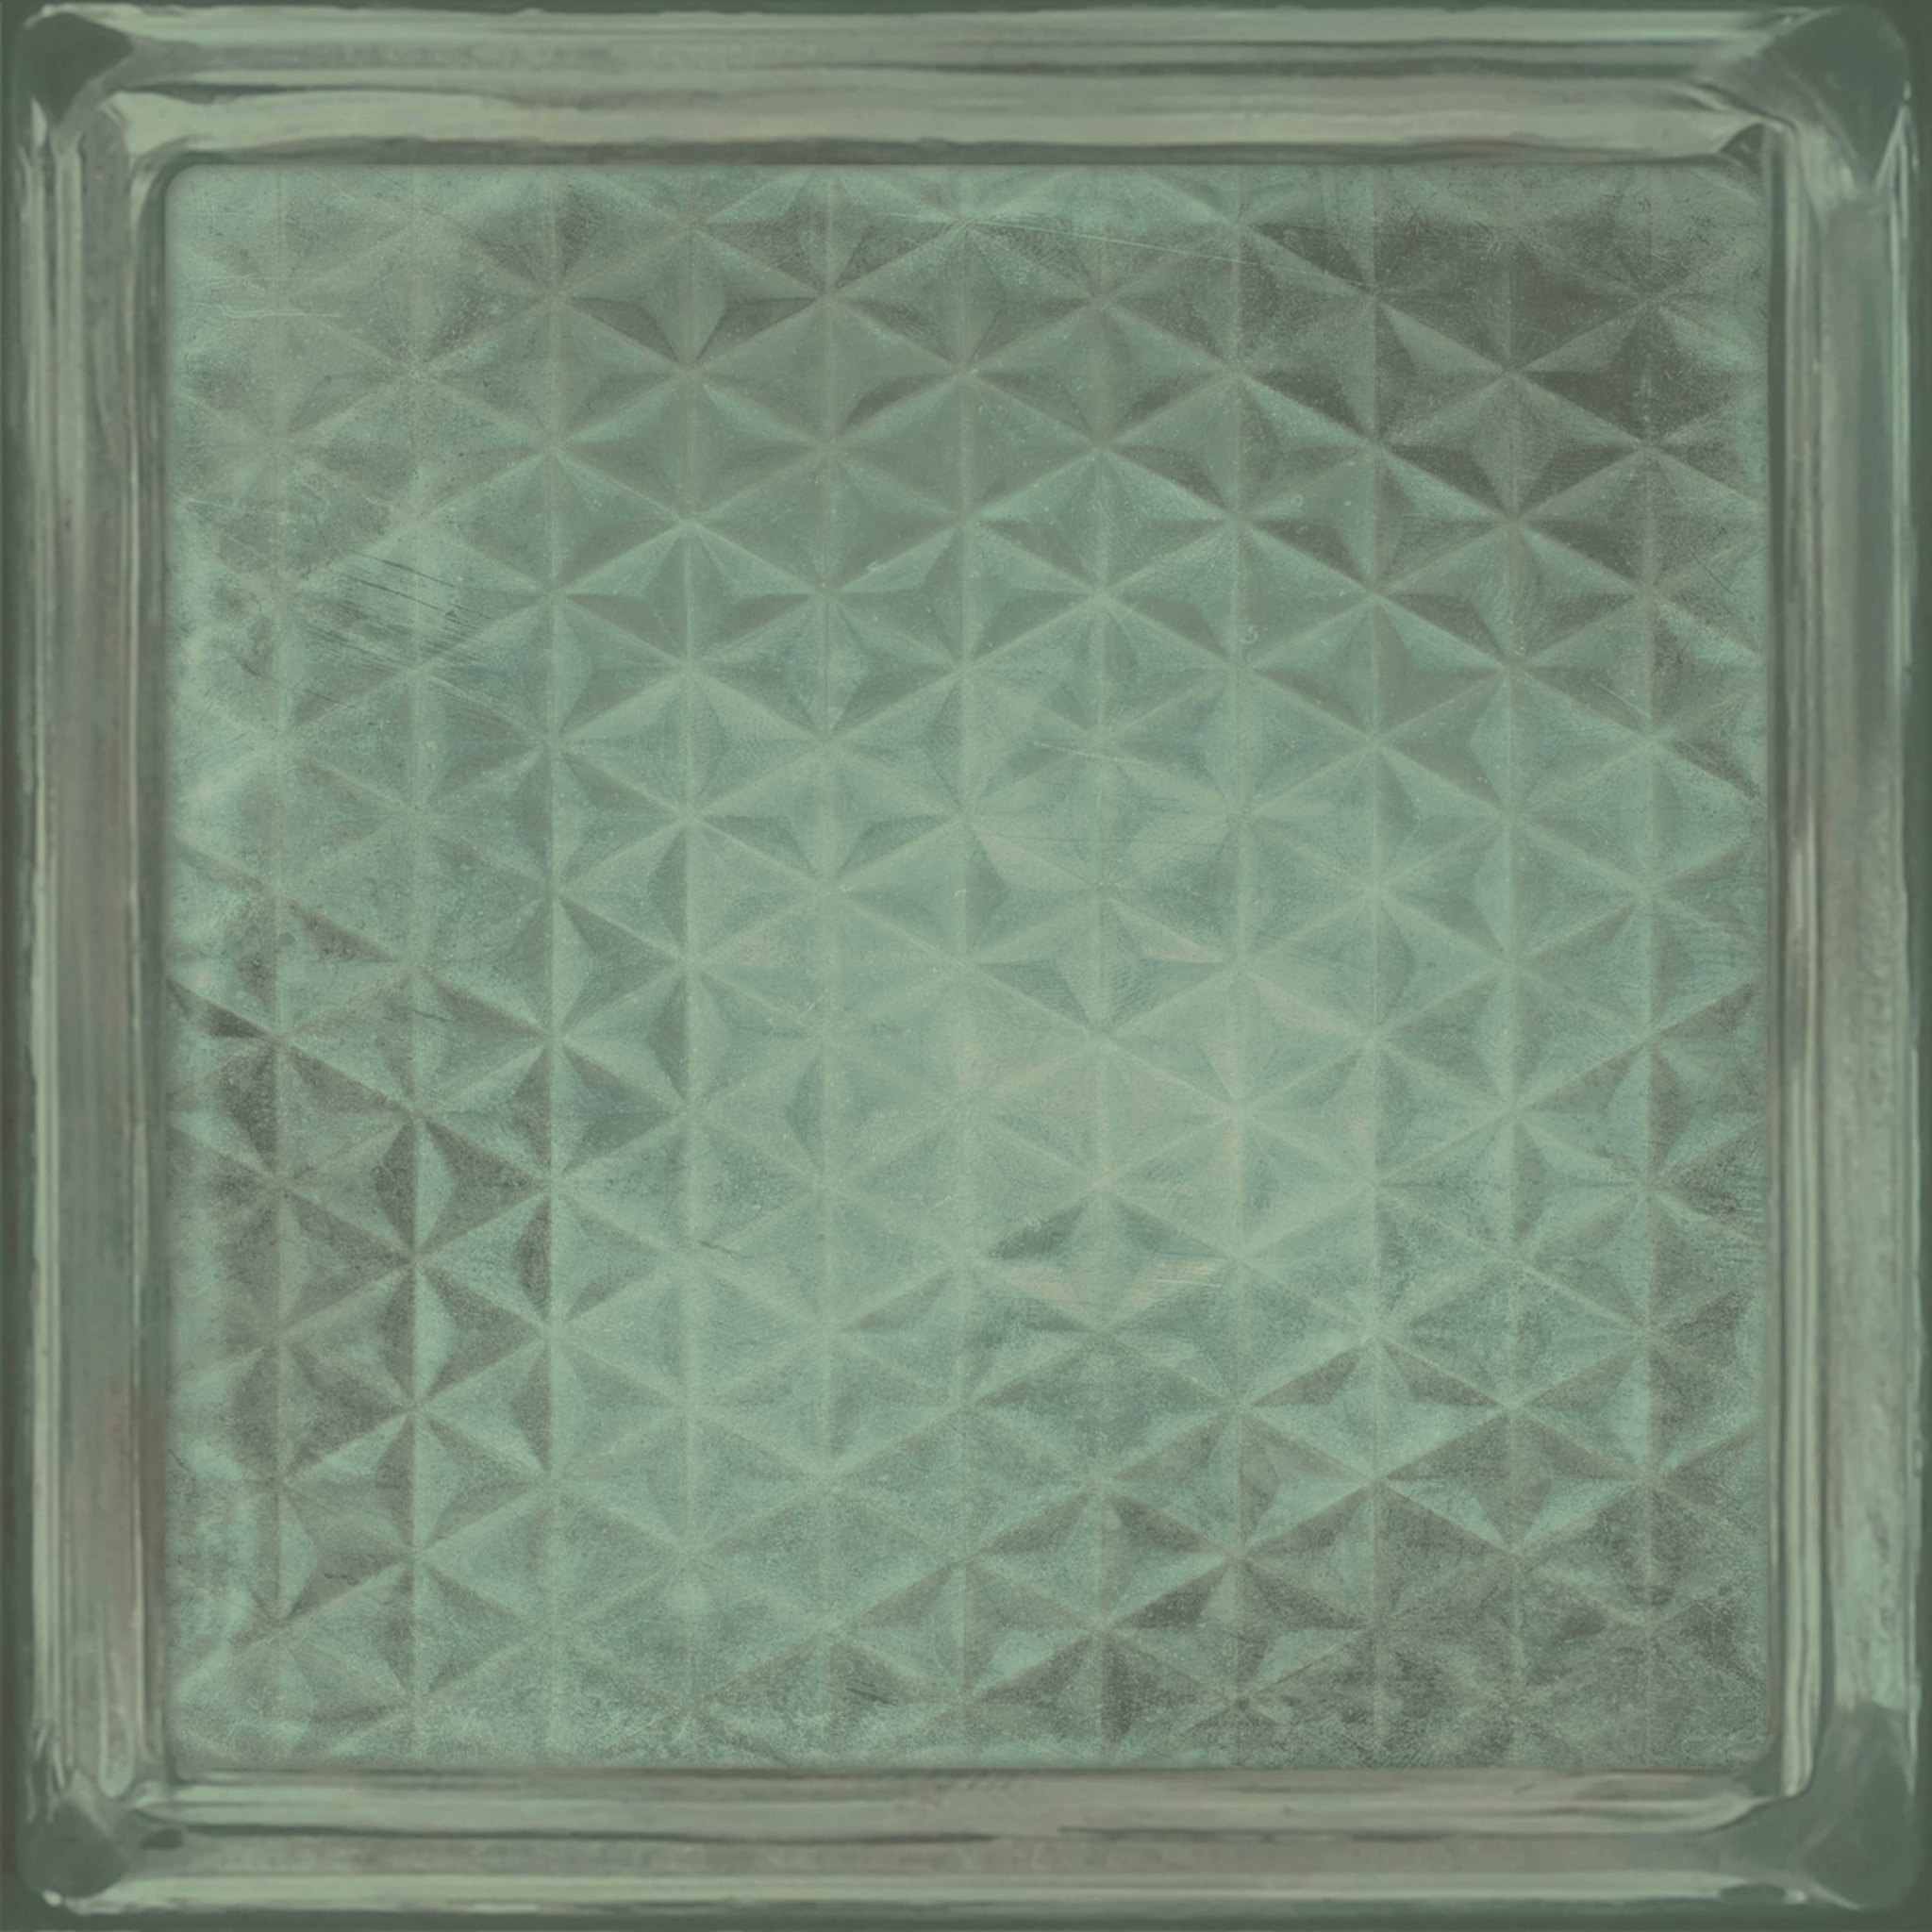 20.1*20.1 Glass Green Brick C-514 настенная плитка 0.88м2/22шт